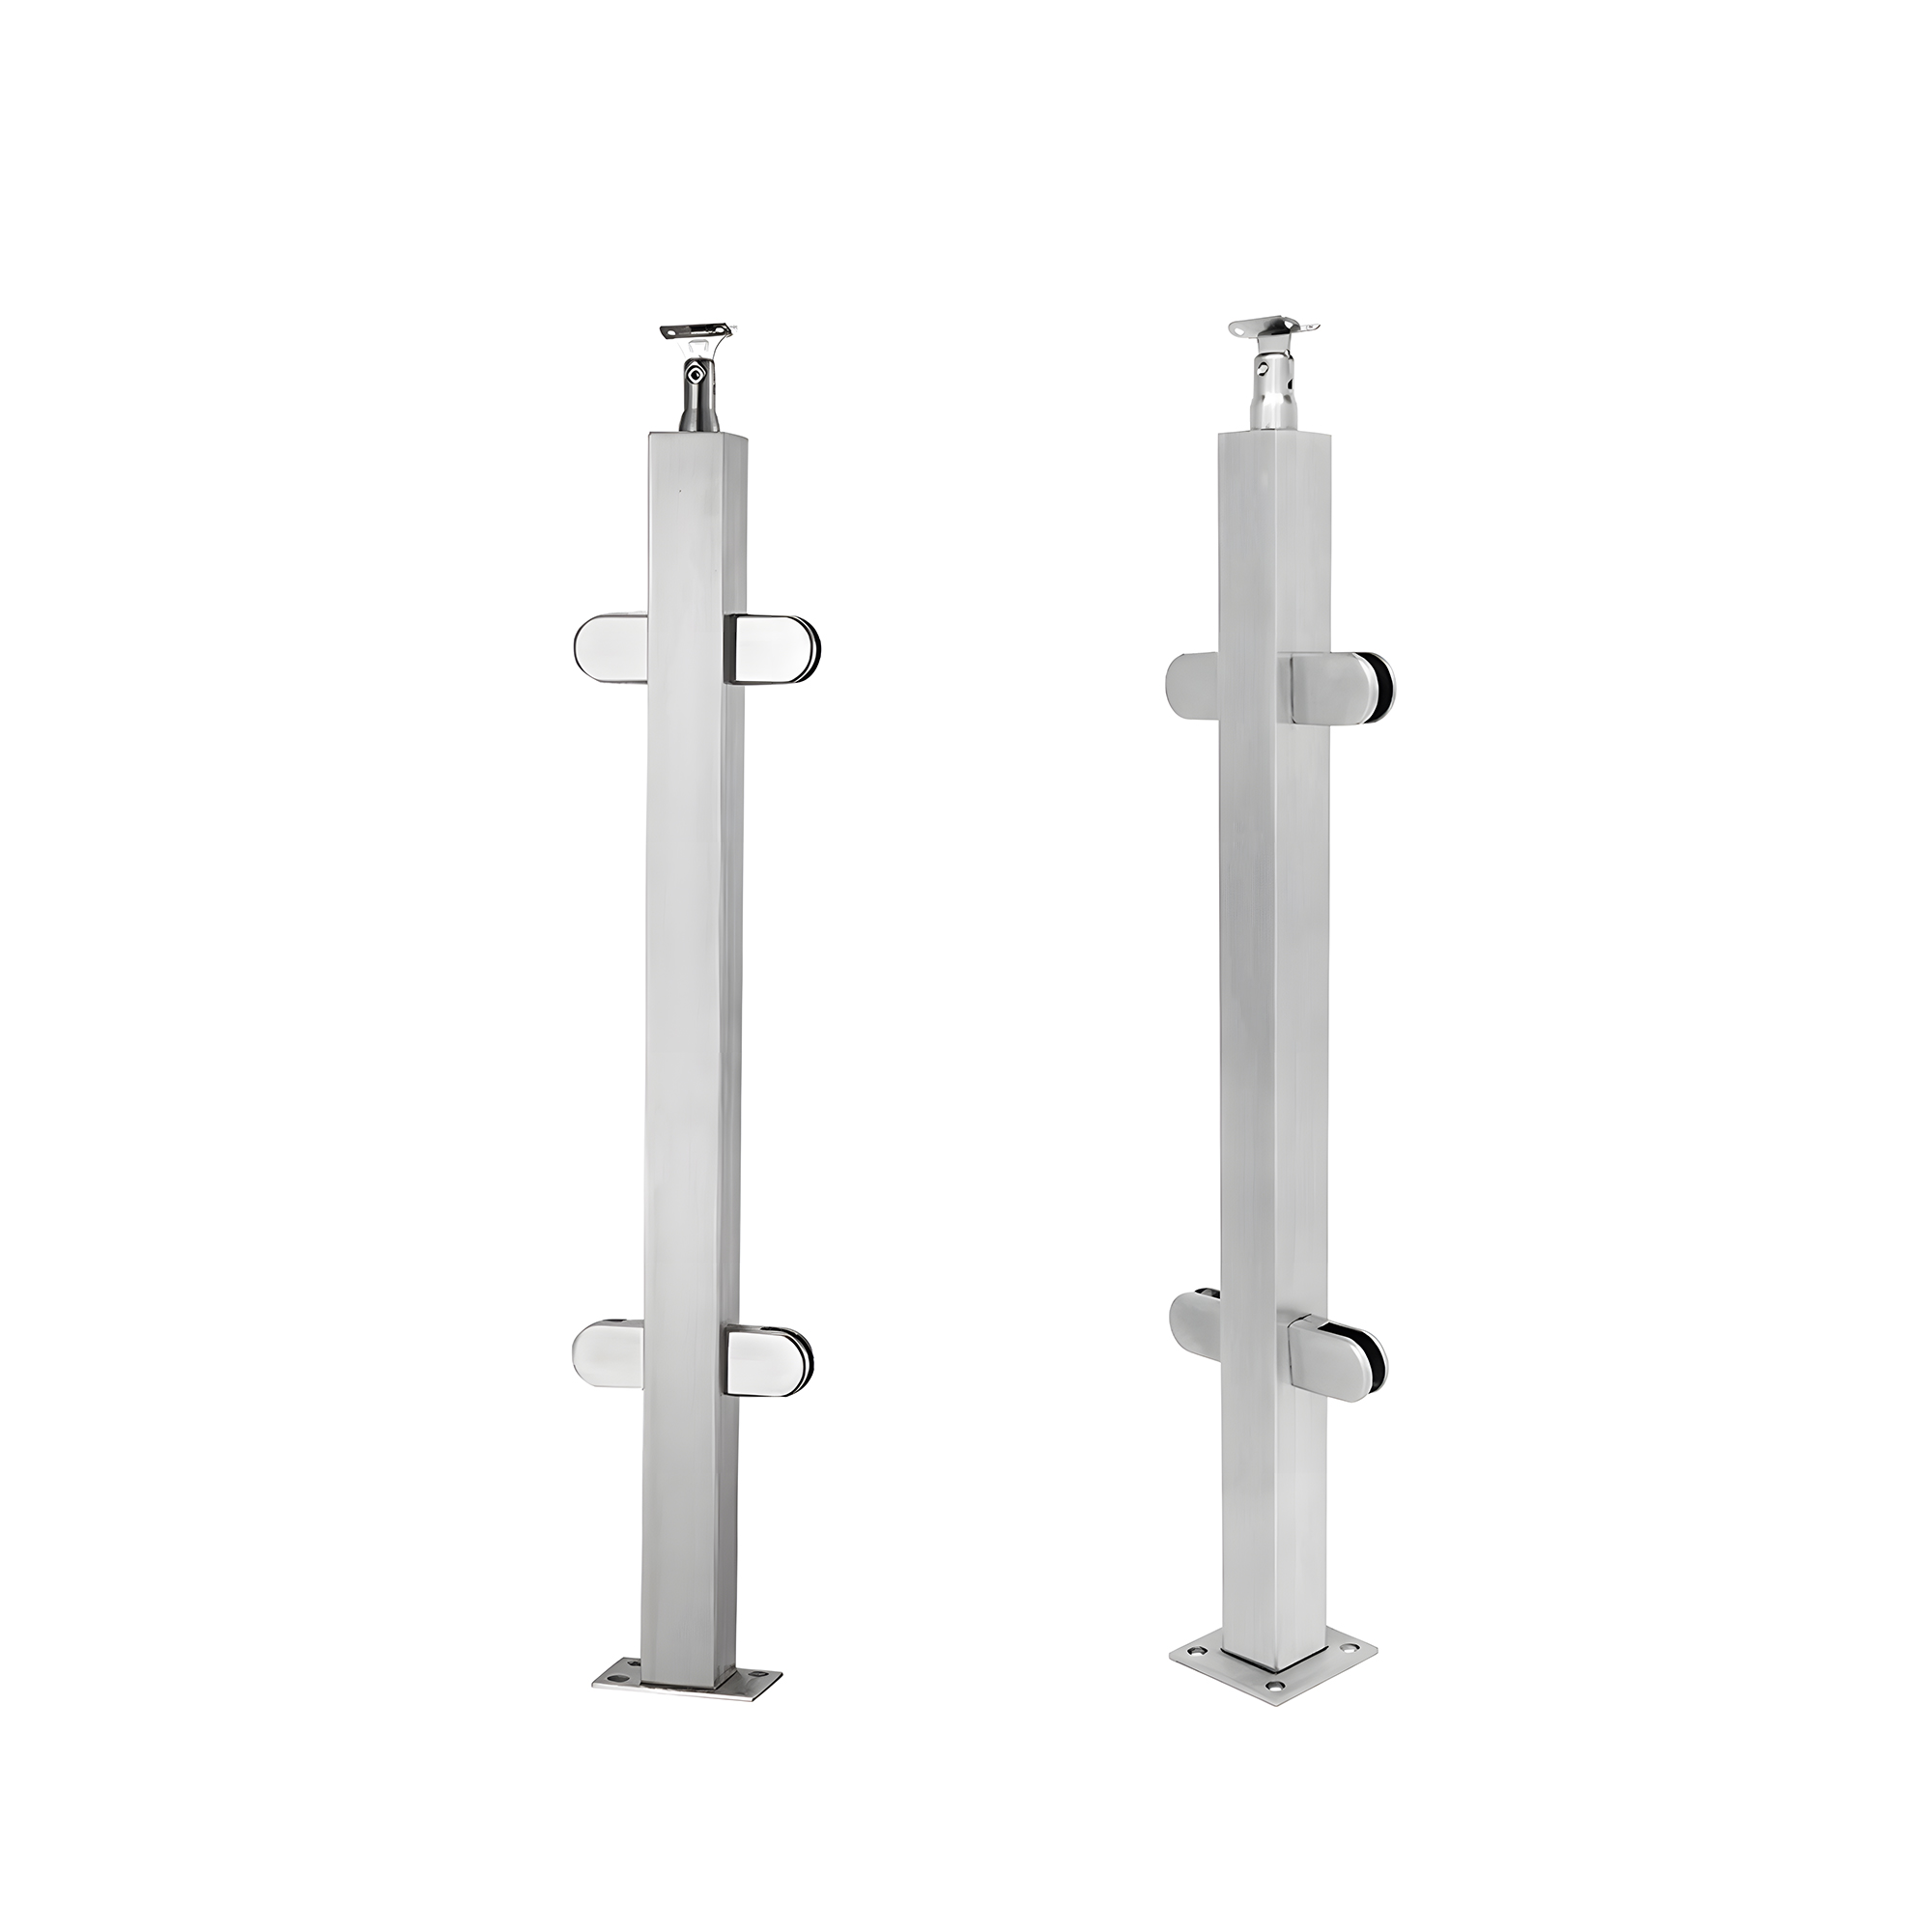 Stainless Steel Handrail Post Kits Glass Balustrade Hardware Modern Design For Balcony Railing